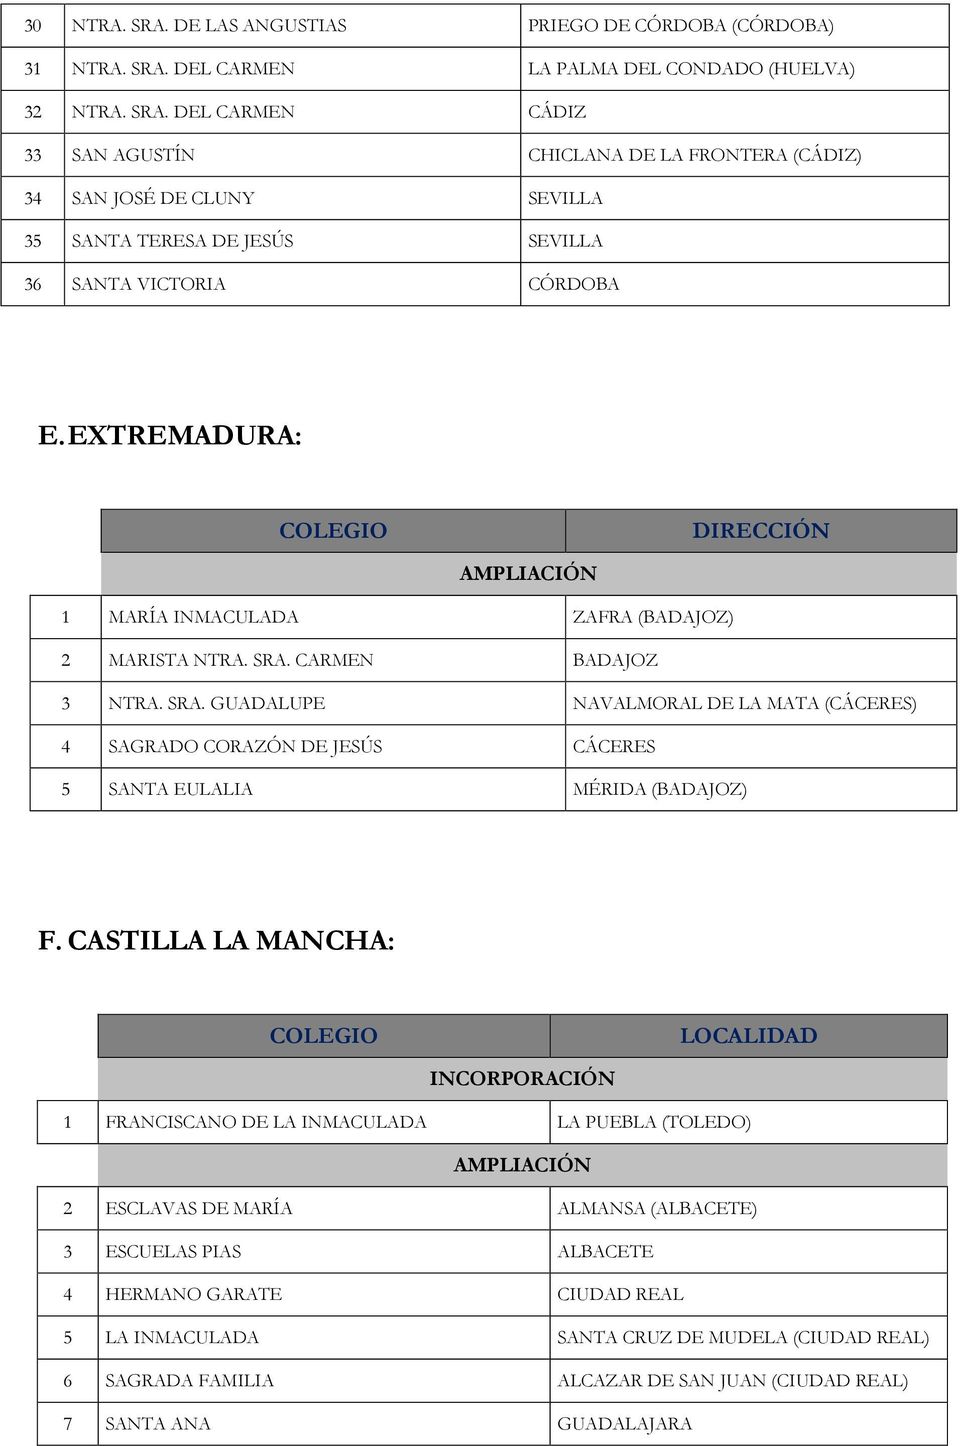 CASTILLA LA MANCHA: INCORPORACIÓN 1 FRANCISCANO DE LA INMACULADA LA PUEBLA (TOLEDO) 2 ESCLAVAS DE MARÍA ALMANSA (ALBACETE) 3 ESCUELAS PIAS ALBACETE 4 HERMANO GARATE CIUDAD REAL 5 LA INMACULADA SANTA